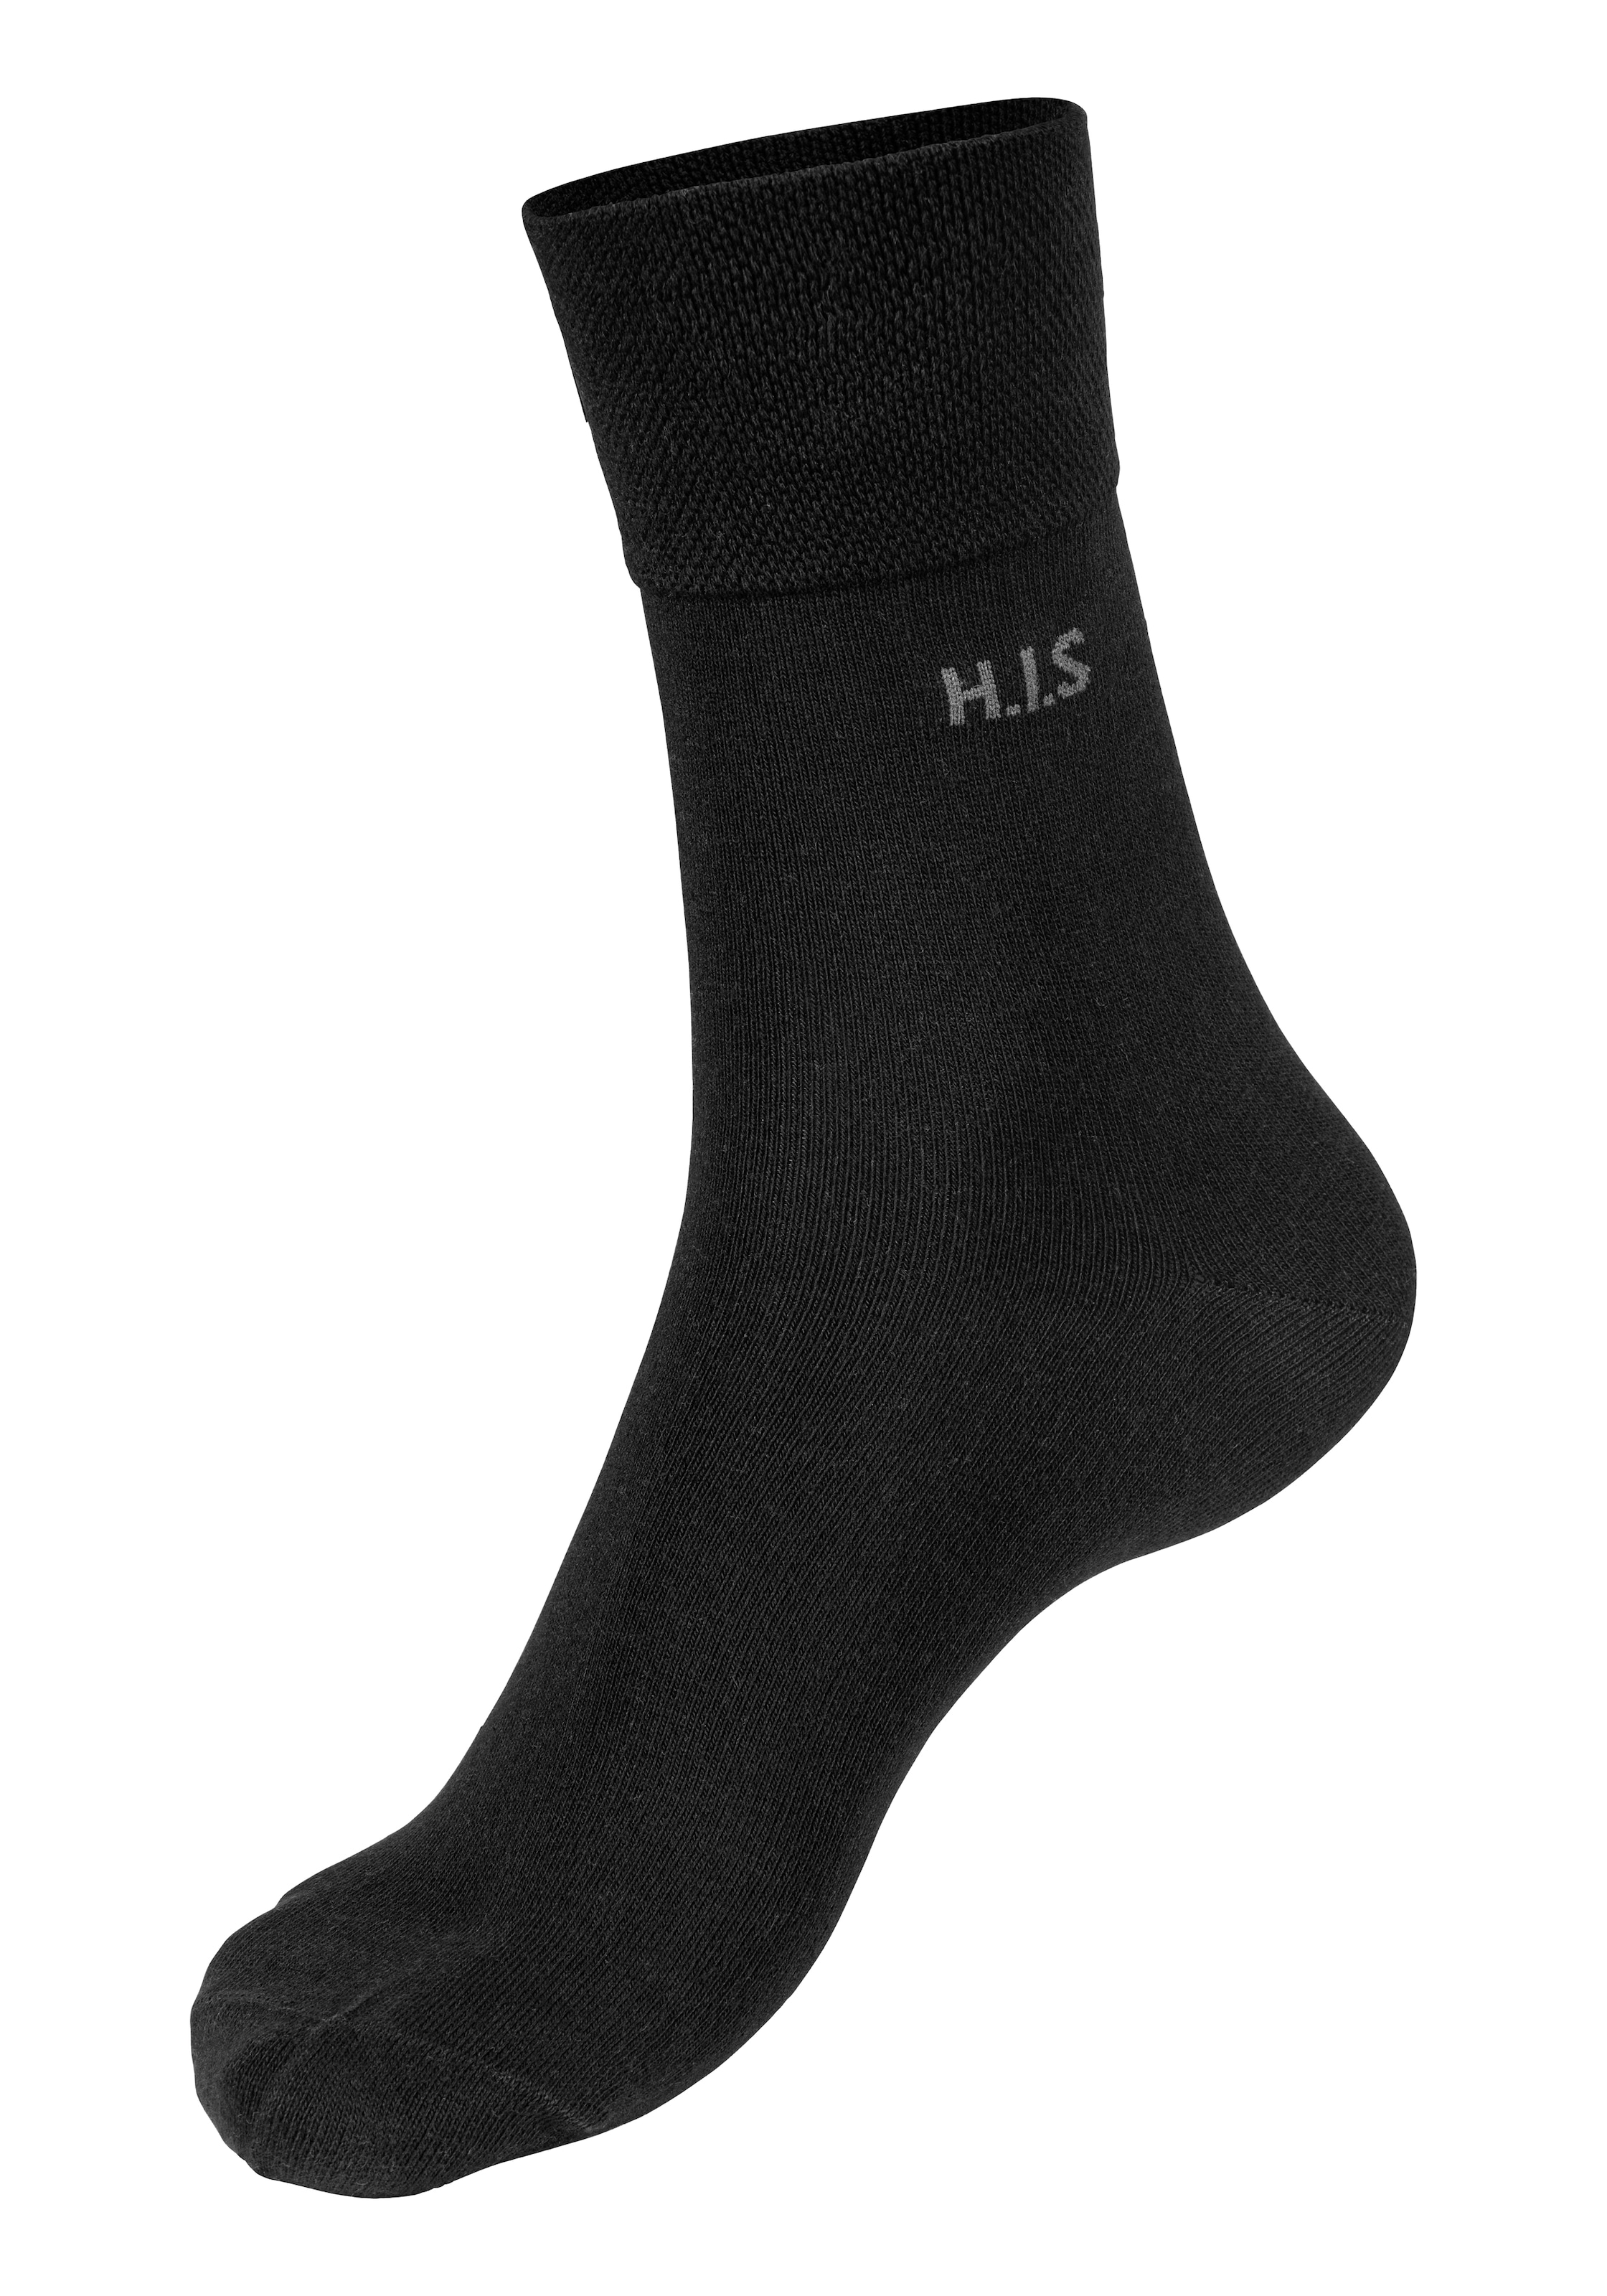 H.I.S Socken Paar) Gummi 12 (Packung ohne einschneidendes